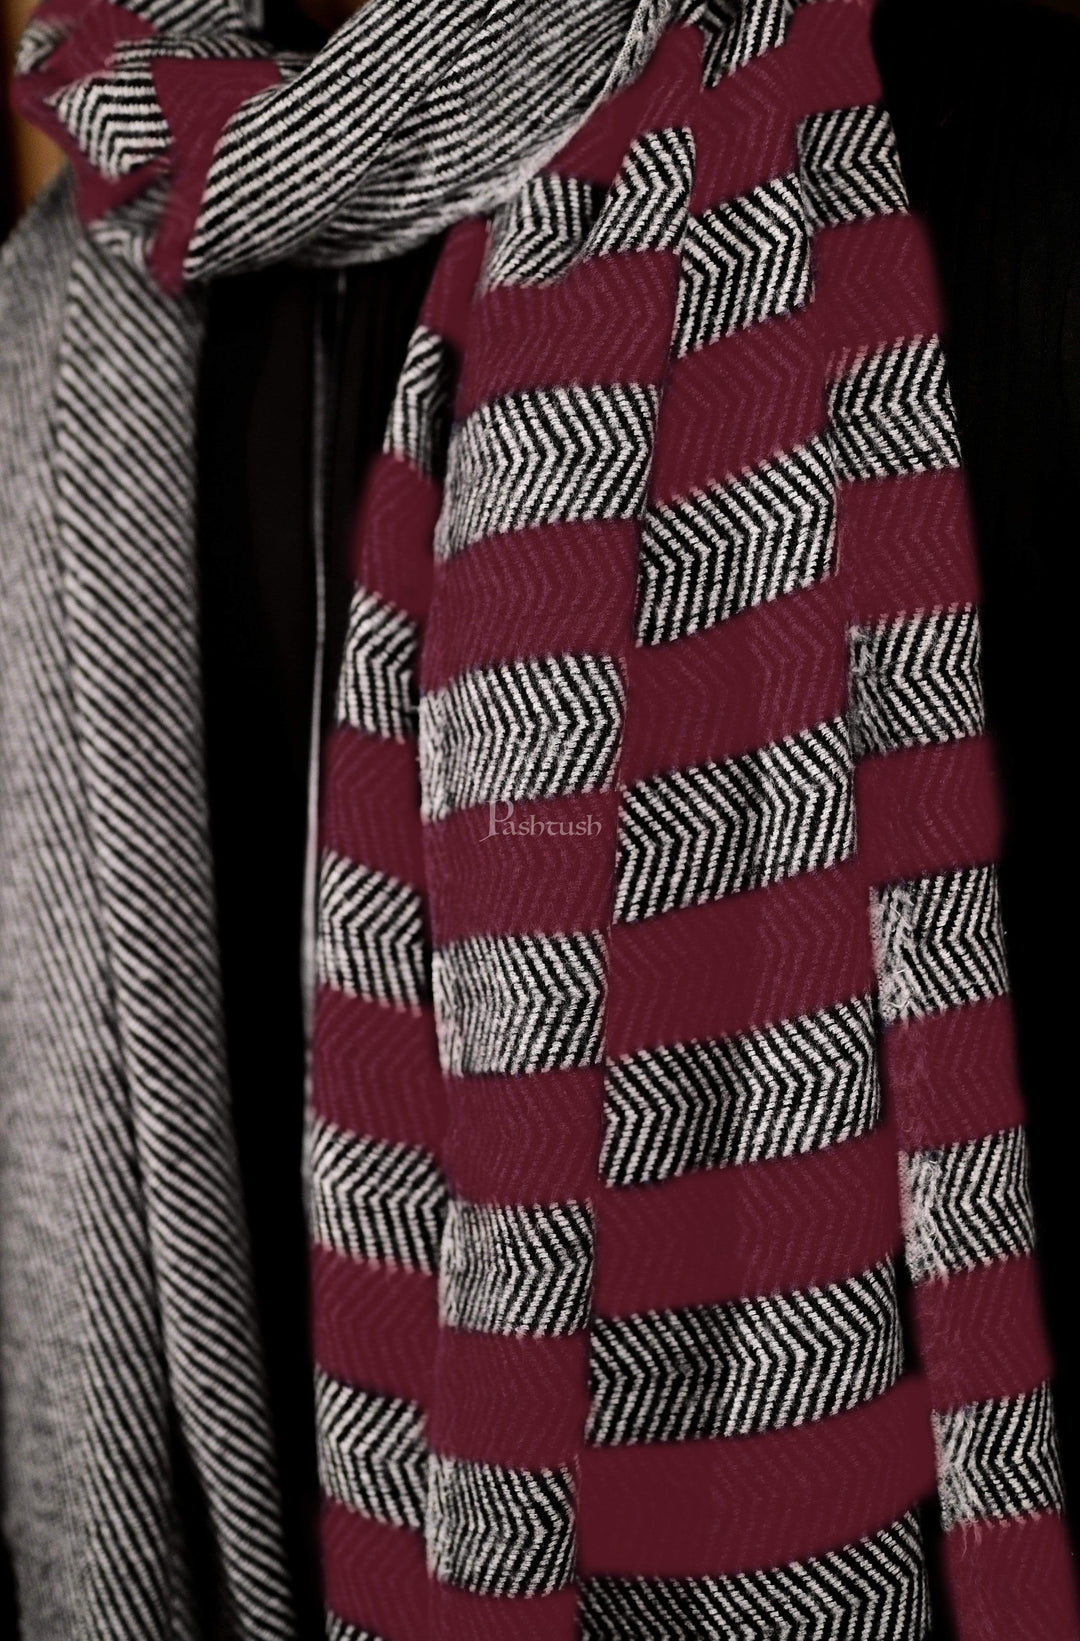 Pashtush India 70x200 Pashtush Mens Herringbone Pattern Weave Warm Woollen Scarf